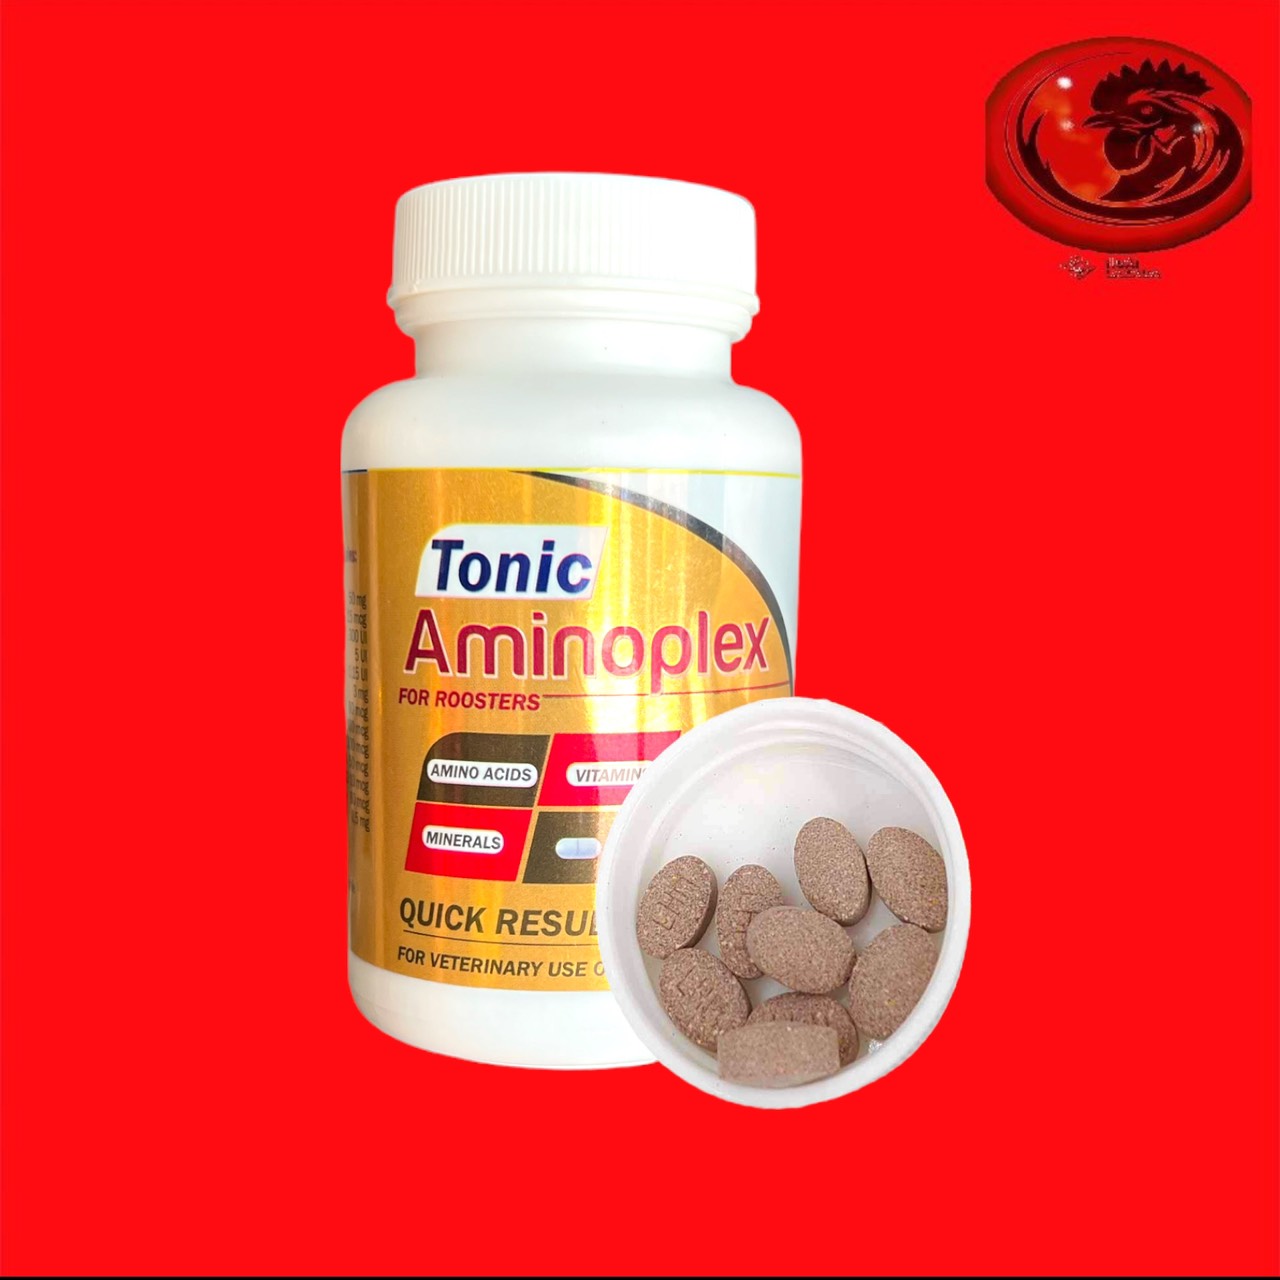 Tonic Aminoplex (thuốc nuôi hoàn toàn mới) Gà tơ lên tay tốt, săn chắc cơ bắp